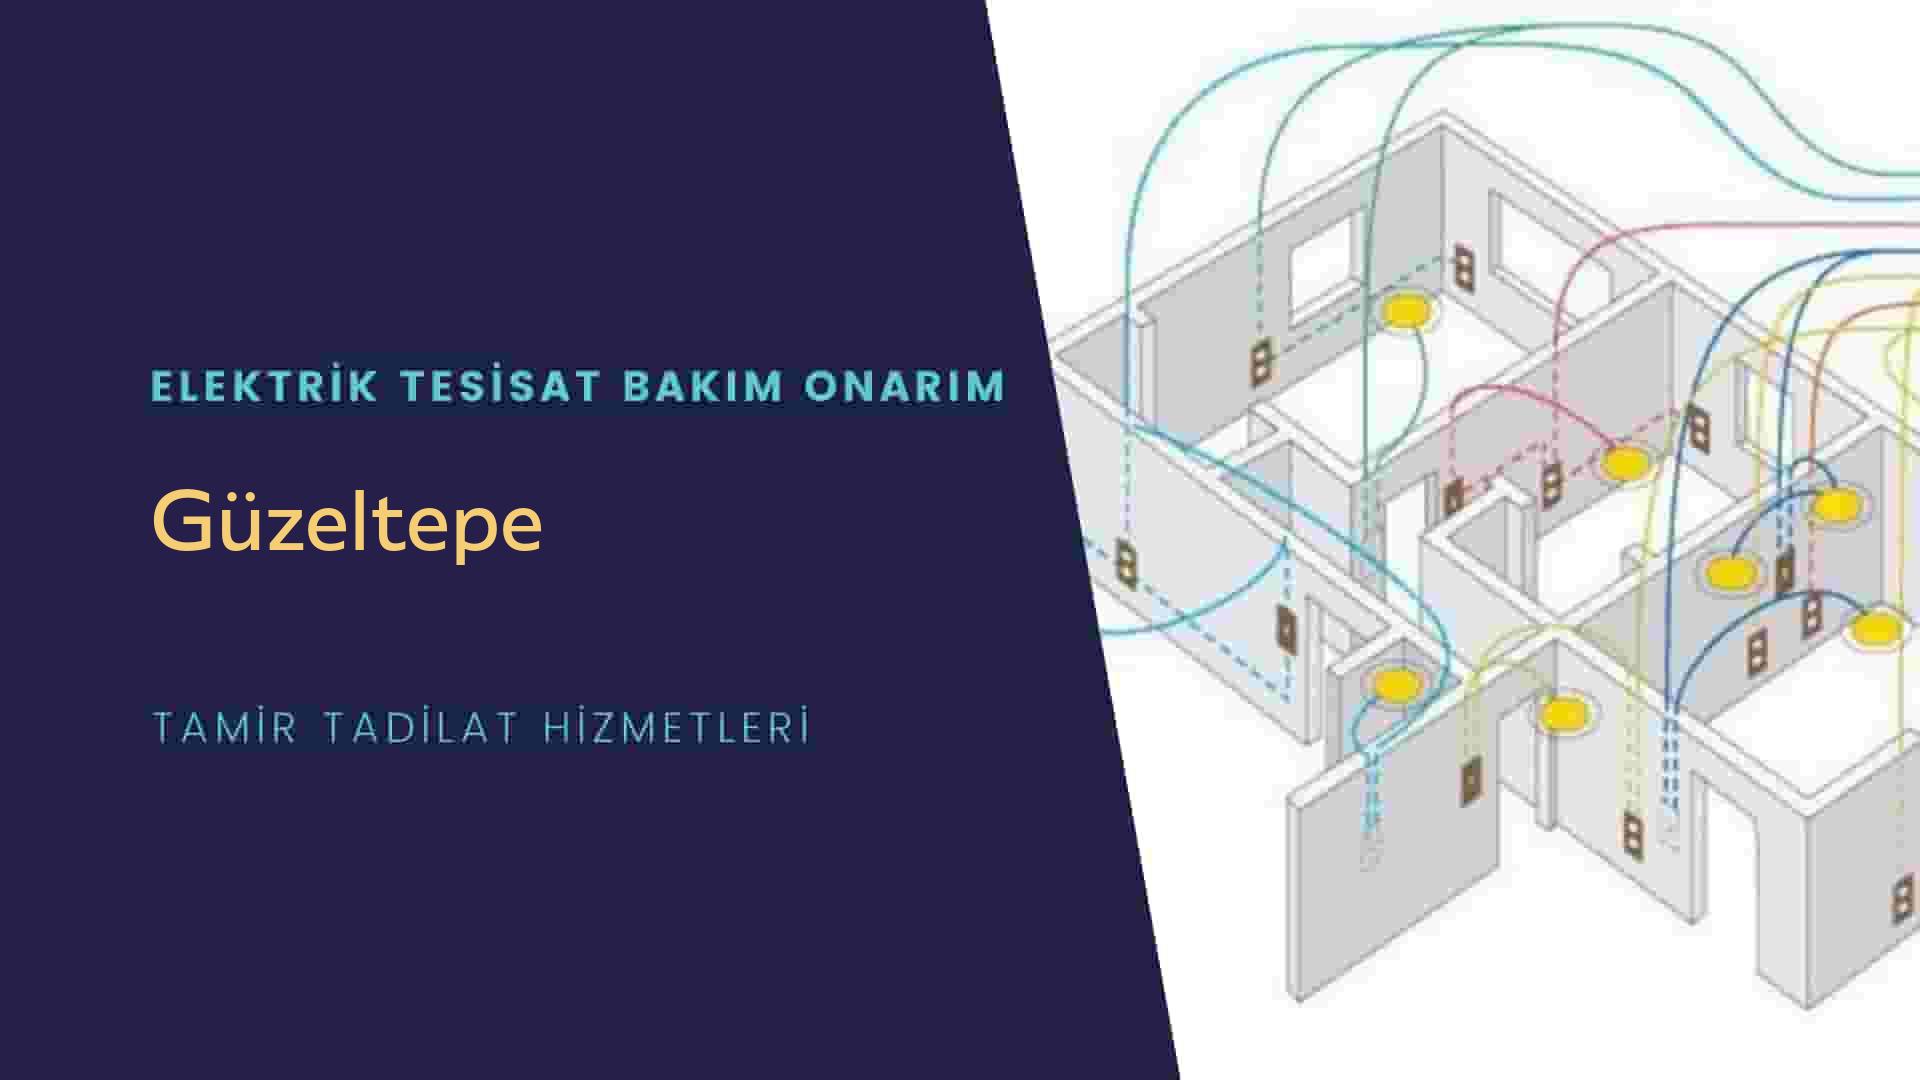 Güzeltepe'de elektrik tesisatı ustalarımı arıyorsunuz doğru adrestenizi Güzeltepe elektrik tesisatı ustalarımız 7/24 sizlere hizmet vermekten mutluluk duyar.